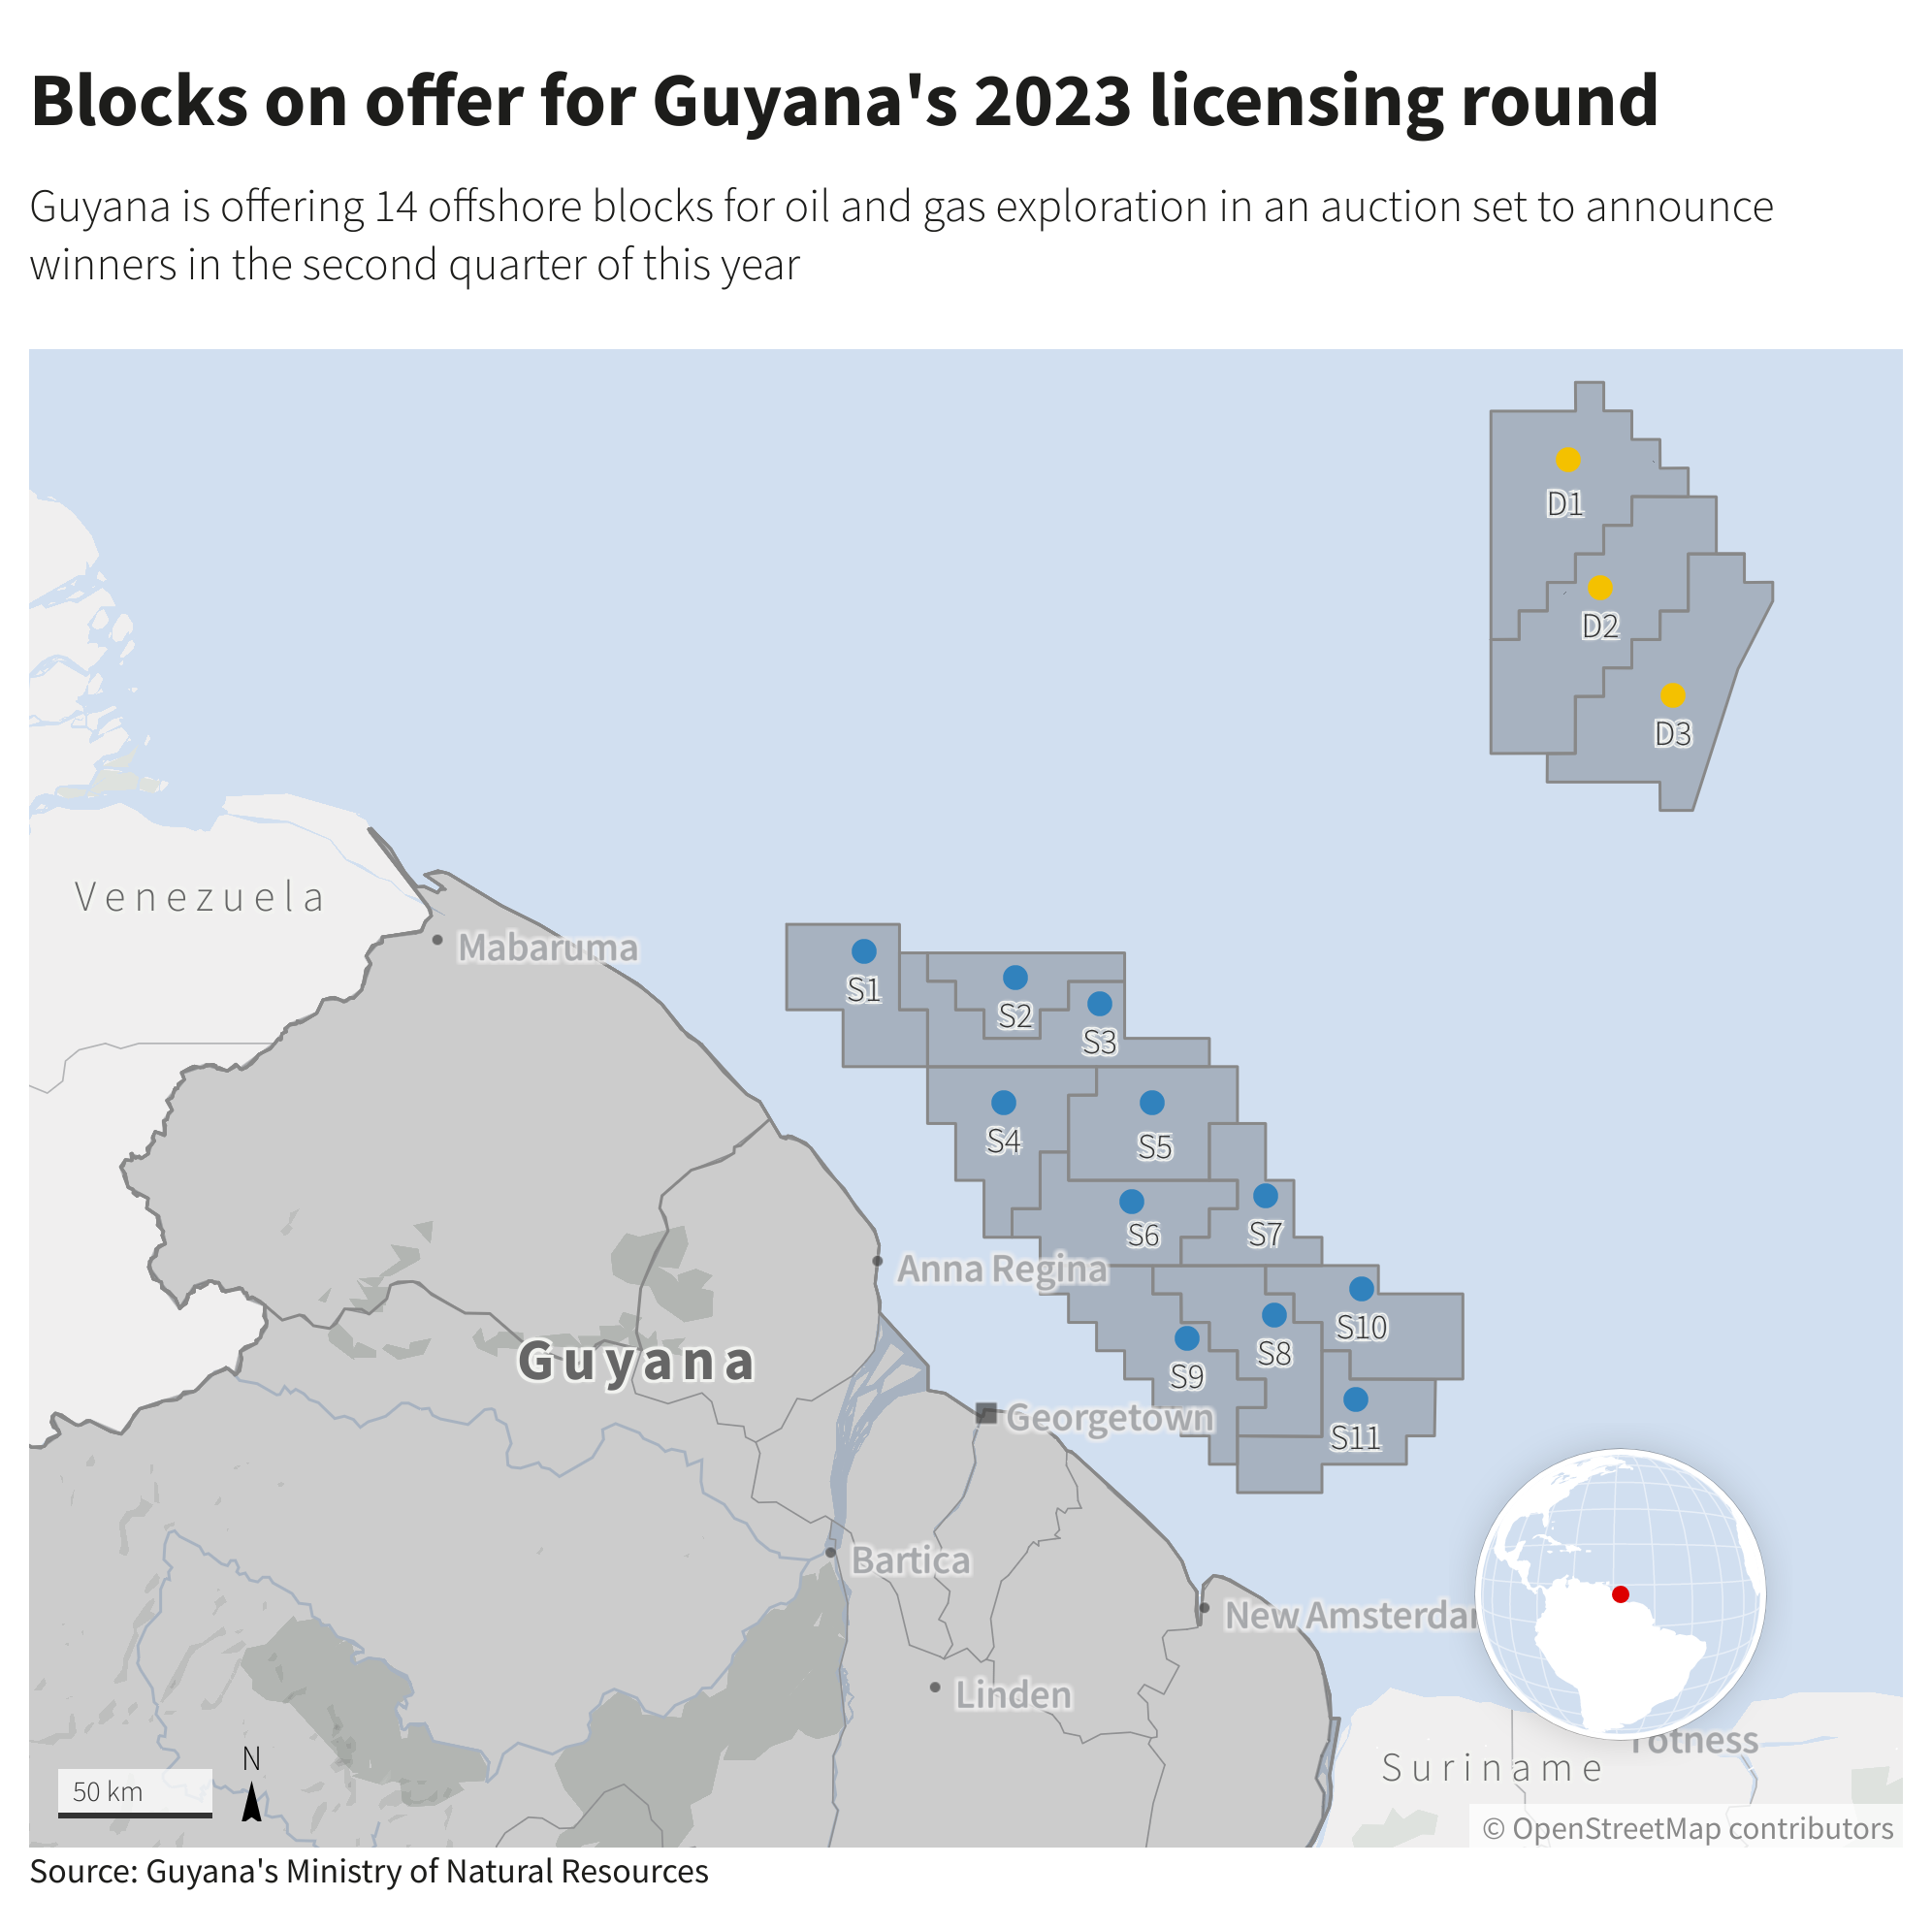 Blocks on offer for Guyana’s 2023 licensing round